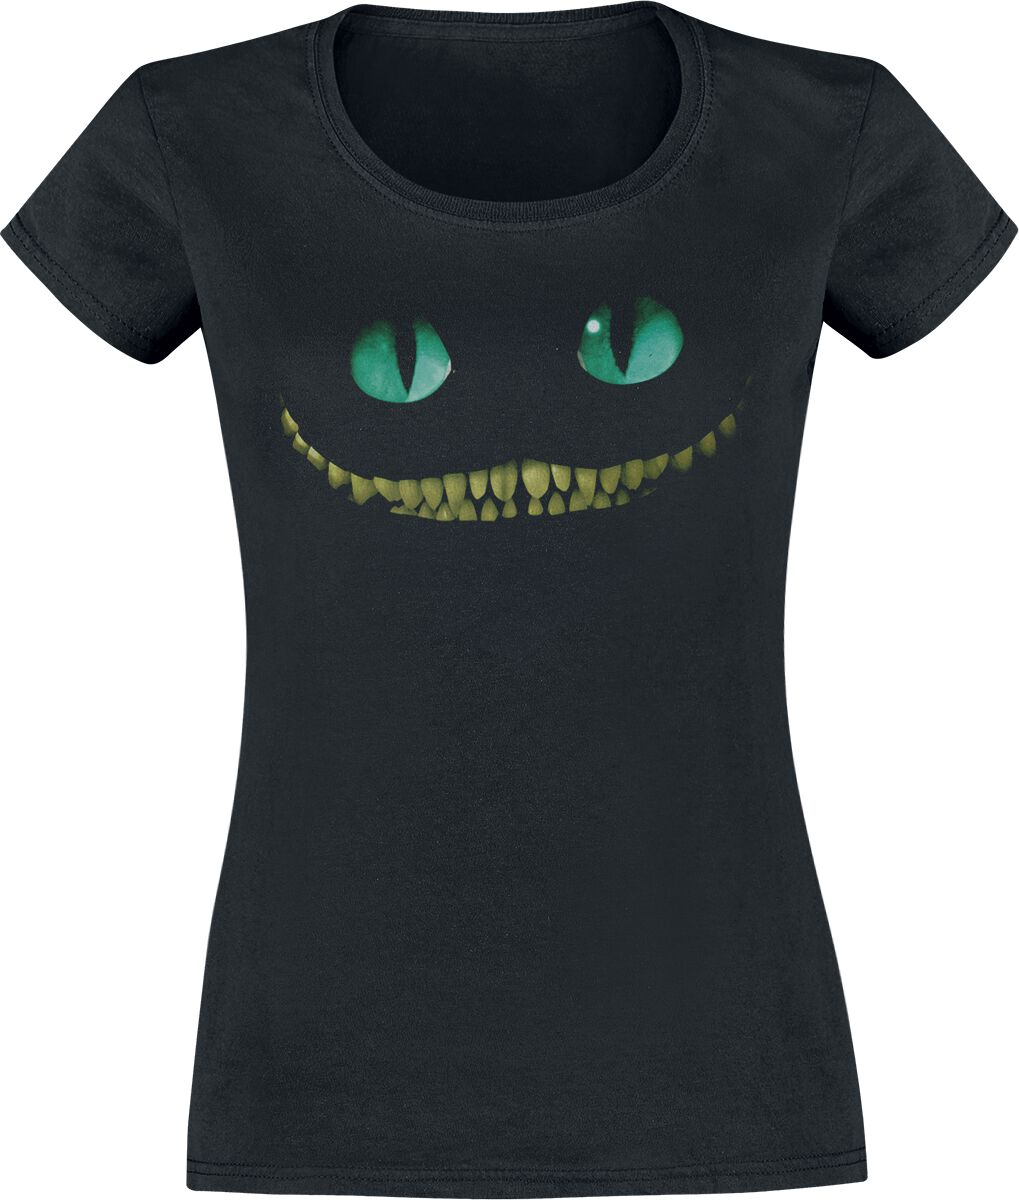 Alice im Wunderland - Disney T-Shirt - Grinsekatze - Lächeln - XS bis XXL - für Damen - Größe L - schwarz  - Lizenzierte